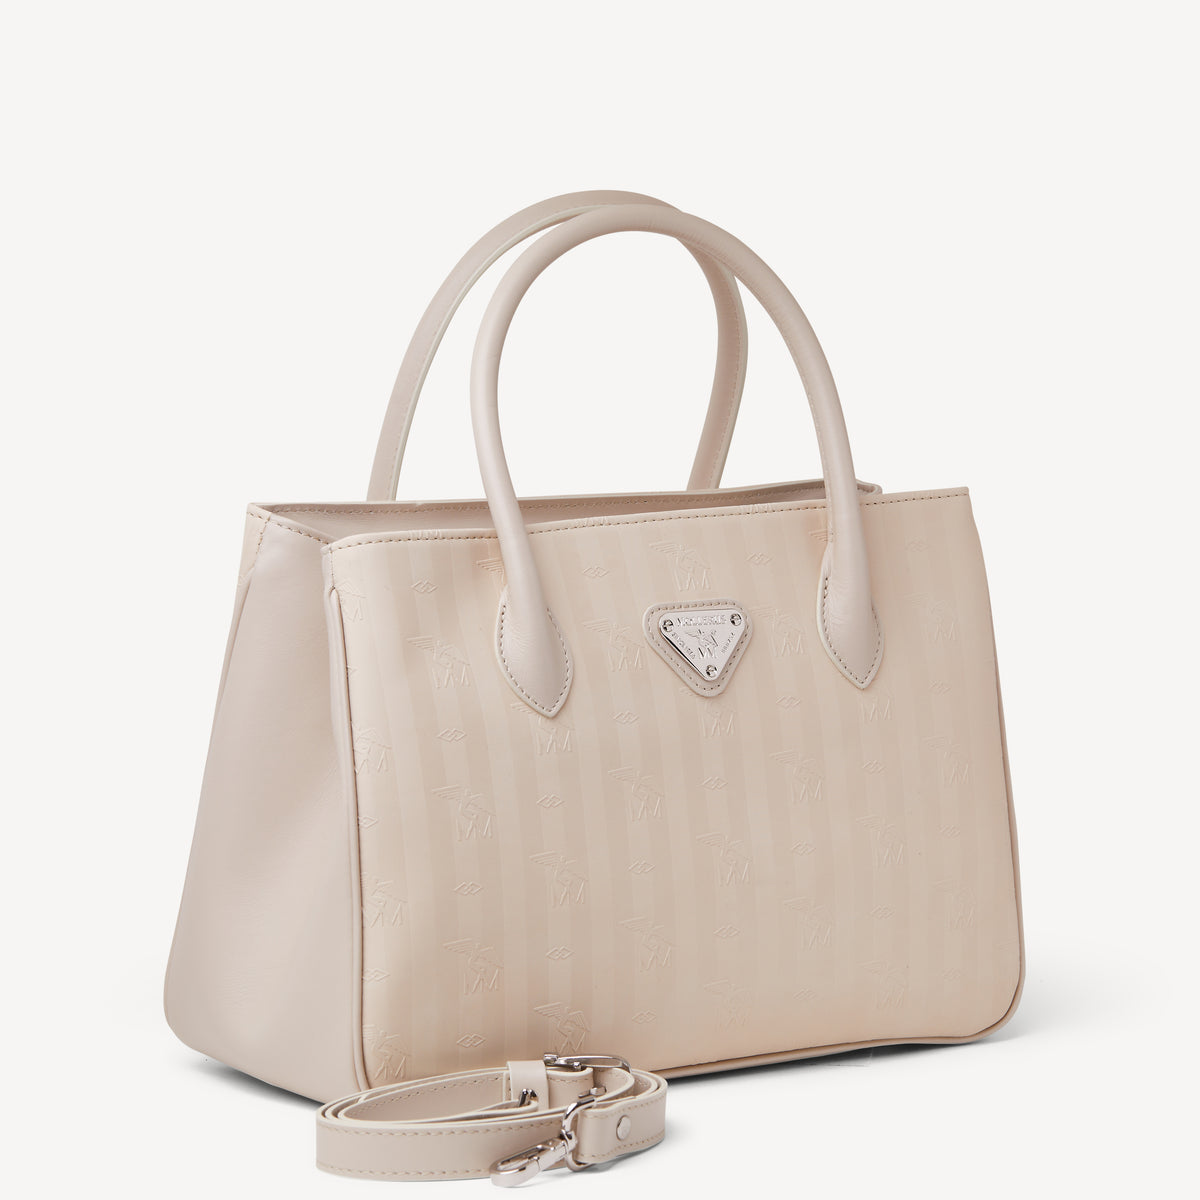 DONAT | Handtasche pearl weiß/silber - seitlich